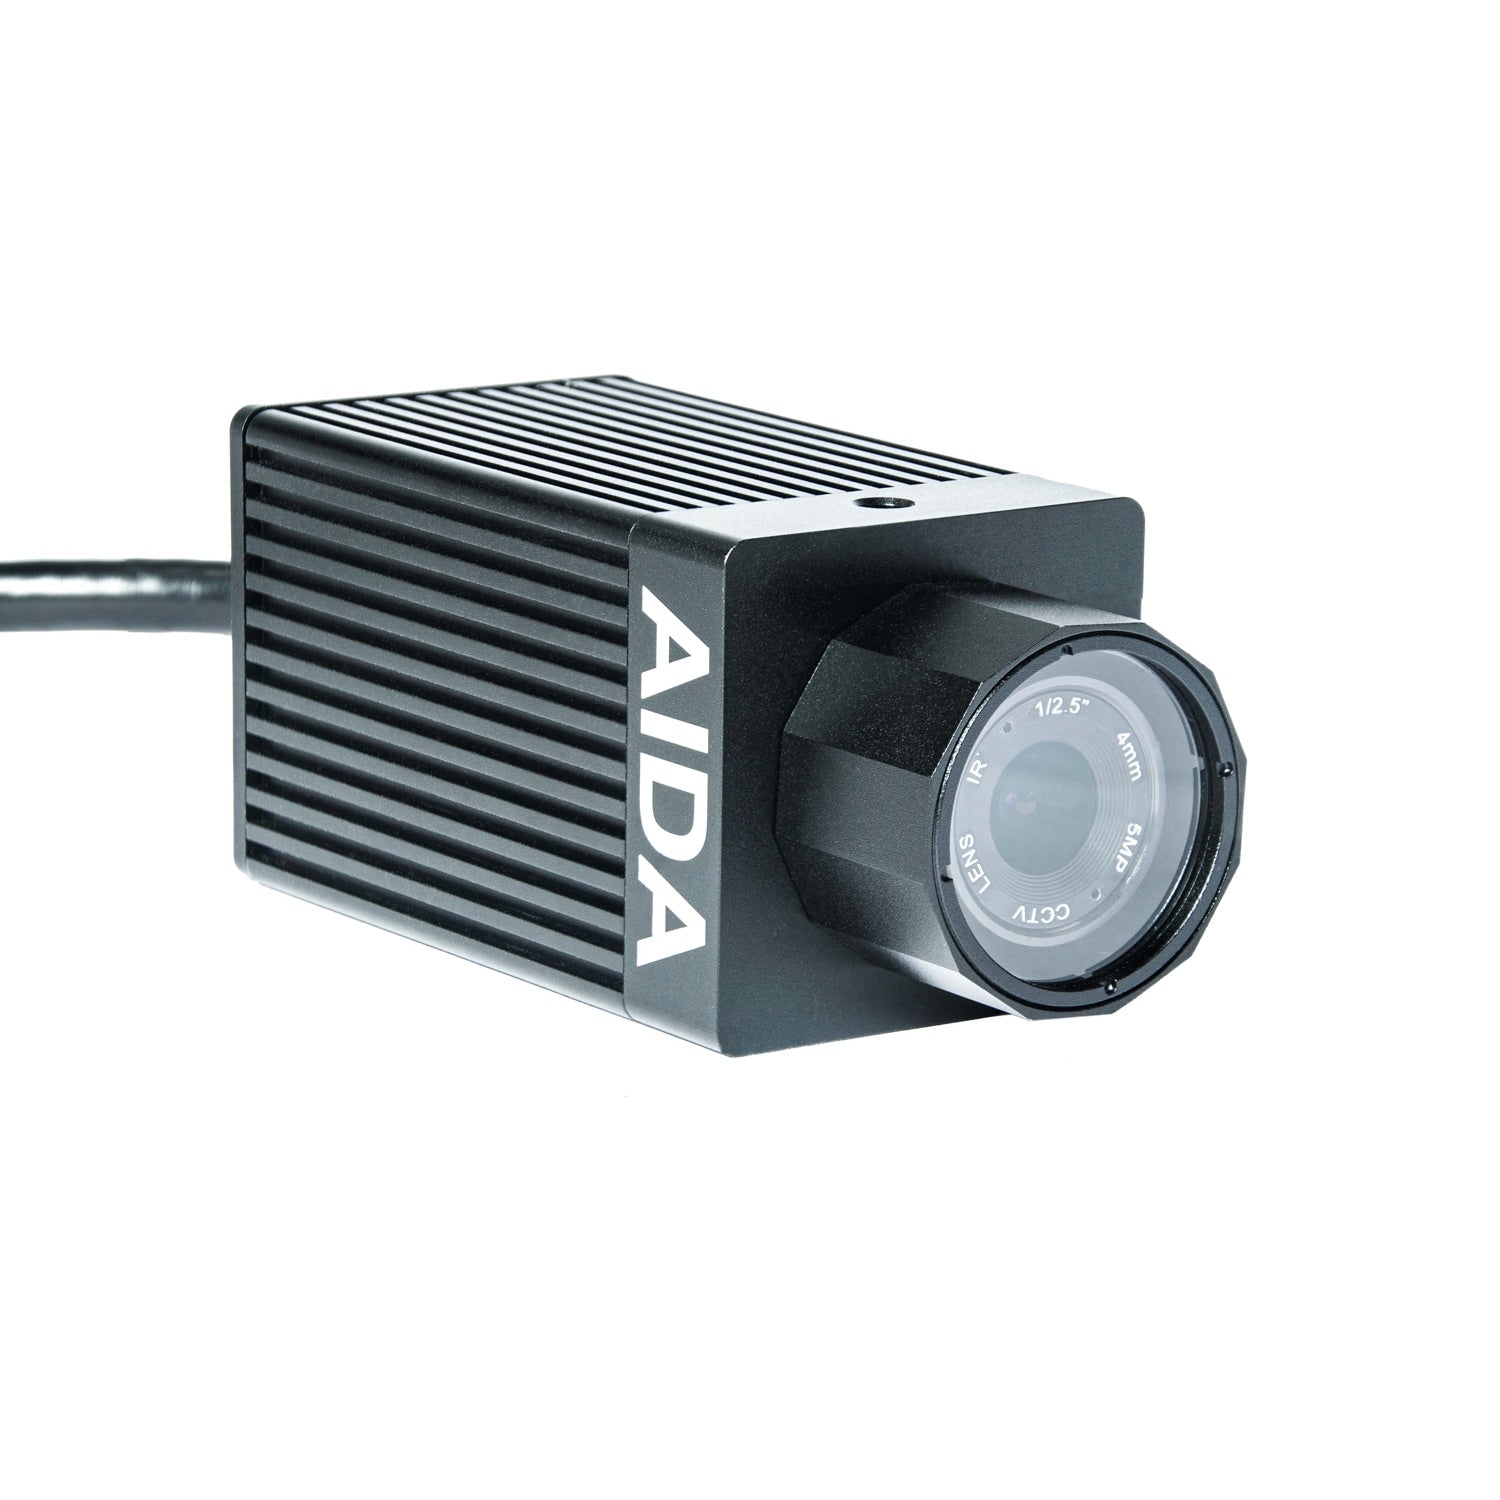 AIDA Imaging HD-NDI3-IP67 - HD NDI|HX3 Weatherproof POV Camera with 120fps, angled right